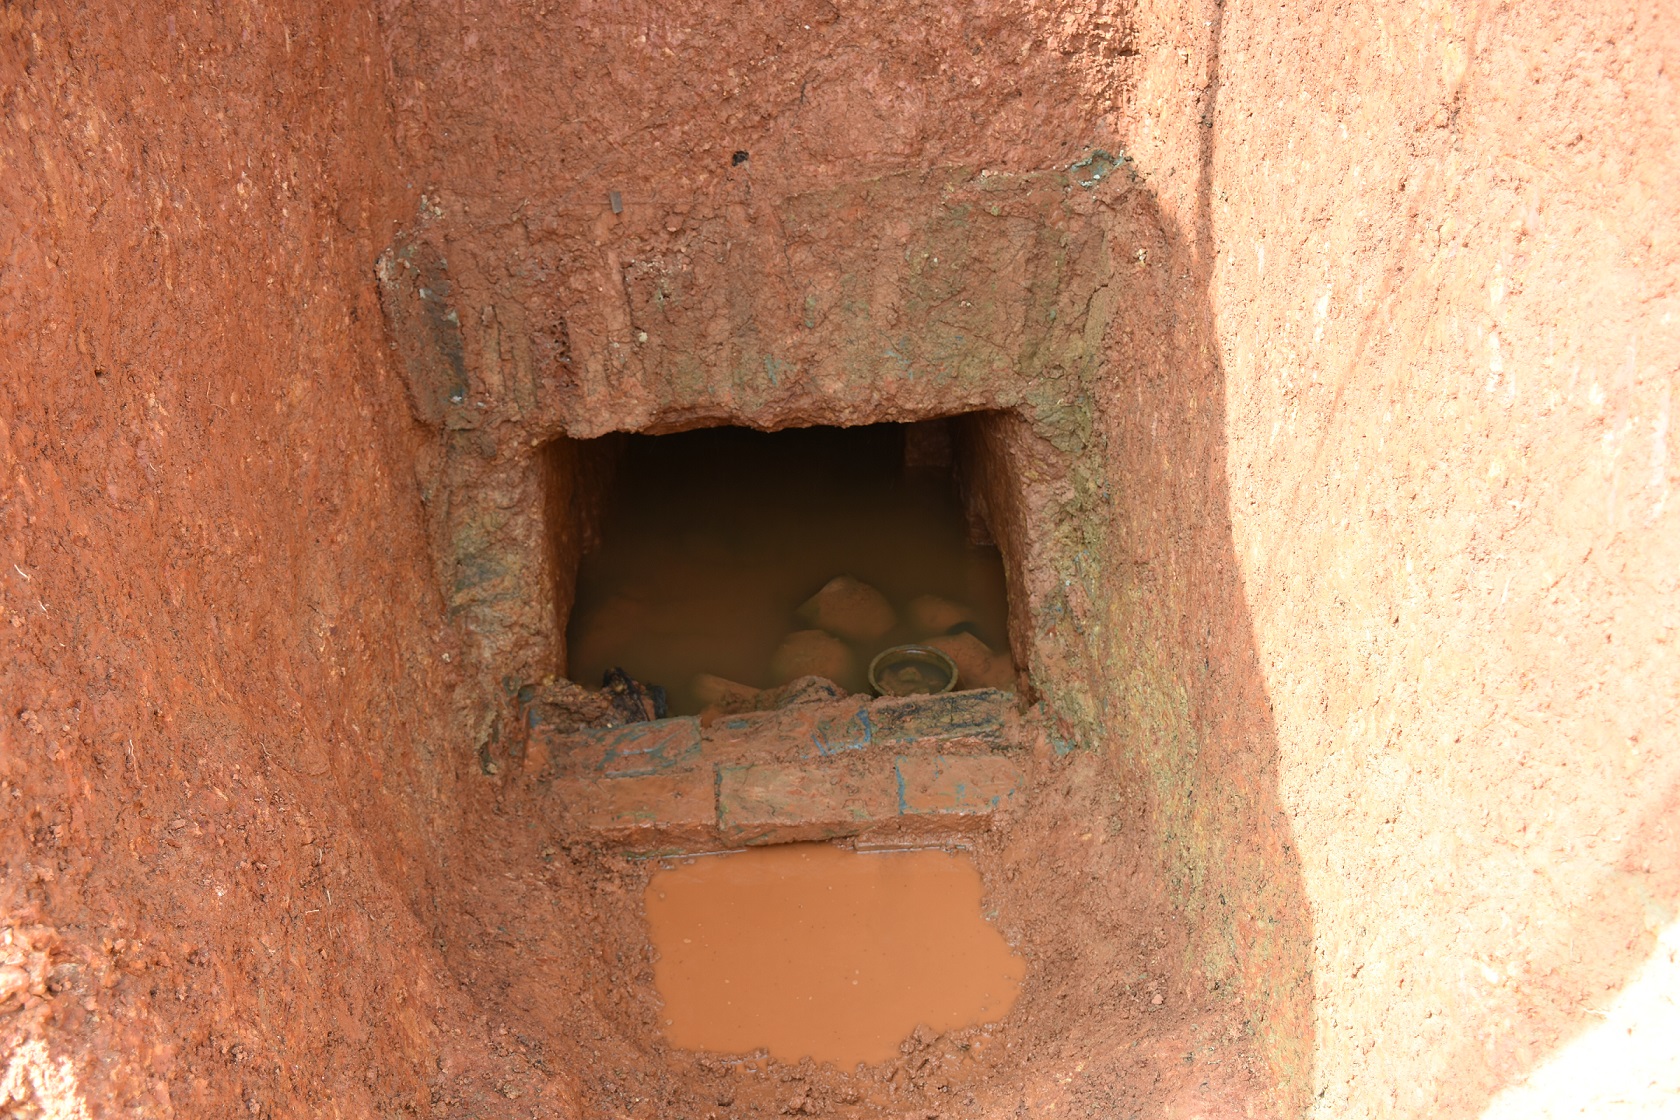 益阳首次发现土坑洞室墓 墓主或为出生富裕的南迁北方人